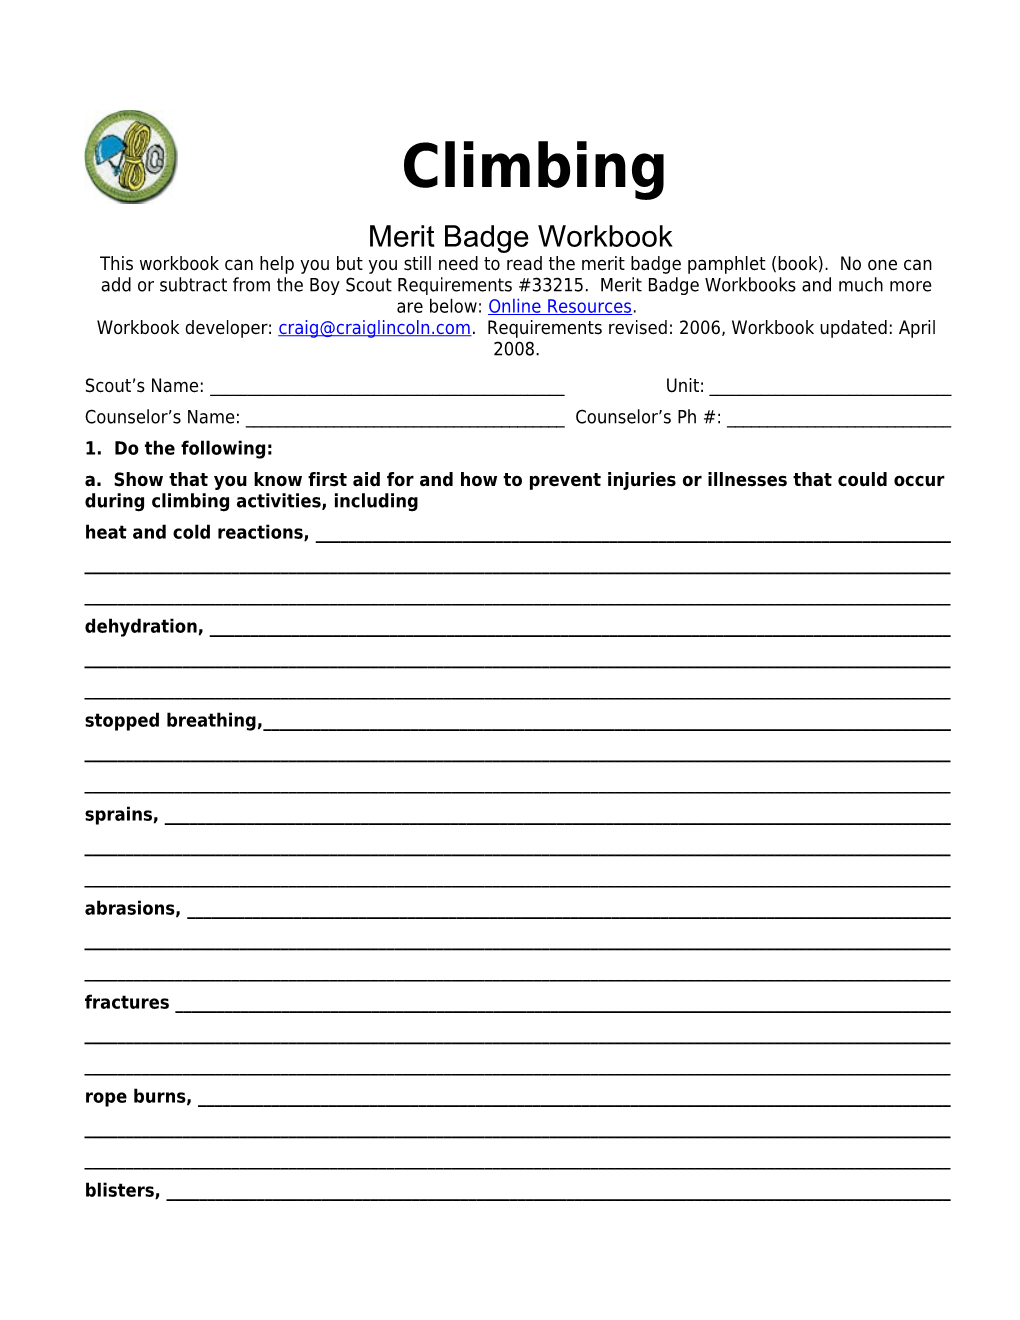 Climbing P. 2 Merit Badge Workbook Scout's Name: ______